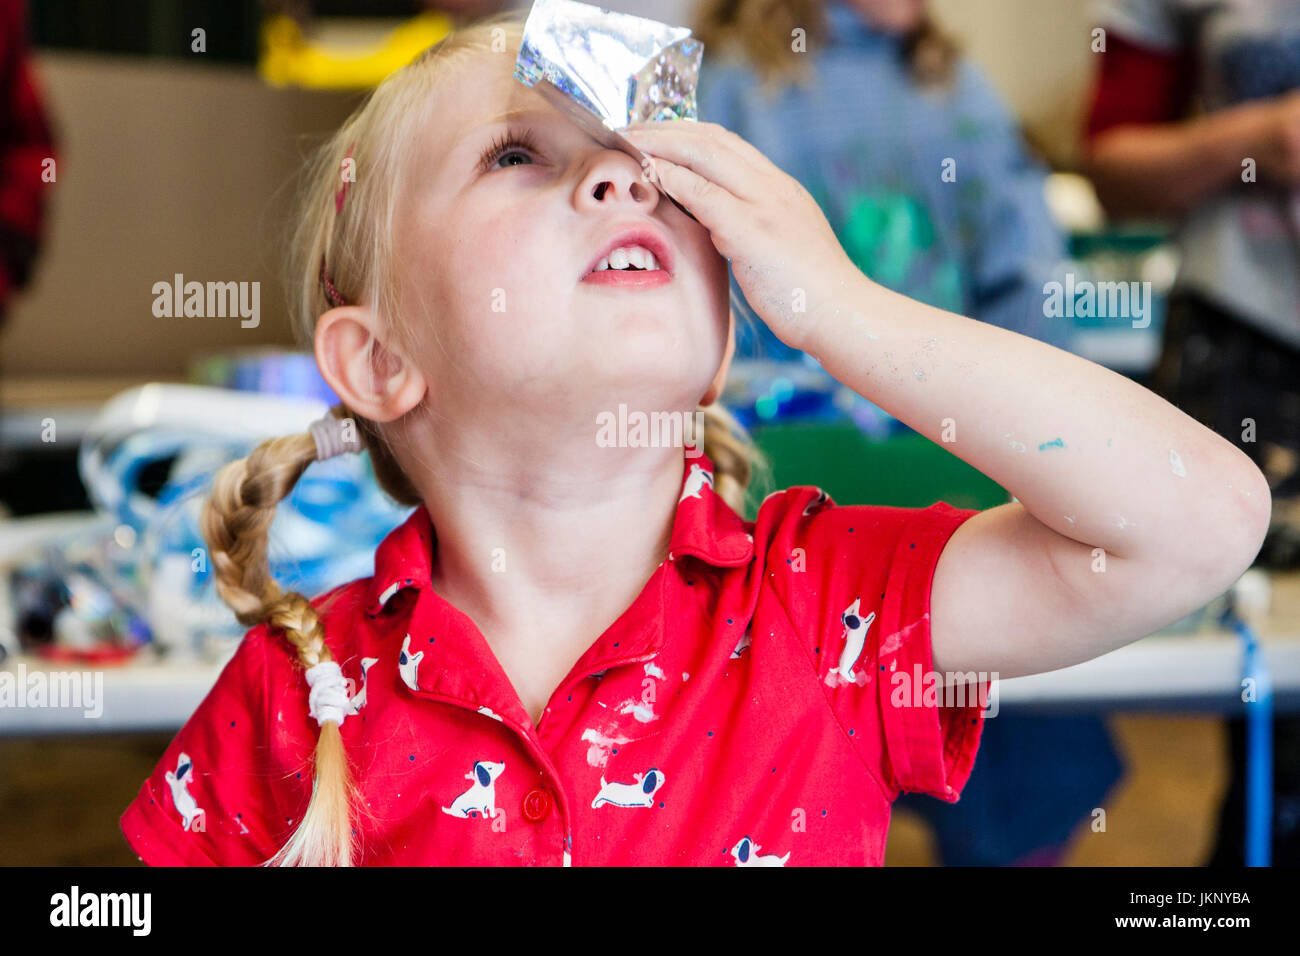 Portrait enfant blonde, fille, 5-6 ans, tenant un morceau de papier d'aluminium peint sur ses yeux pour voir si elle peut voir à travers. Vue en gros plan, le bras et le visage. Participation à l'atelier d'art et d'artisanat.. Banque D'Images